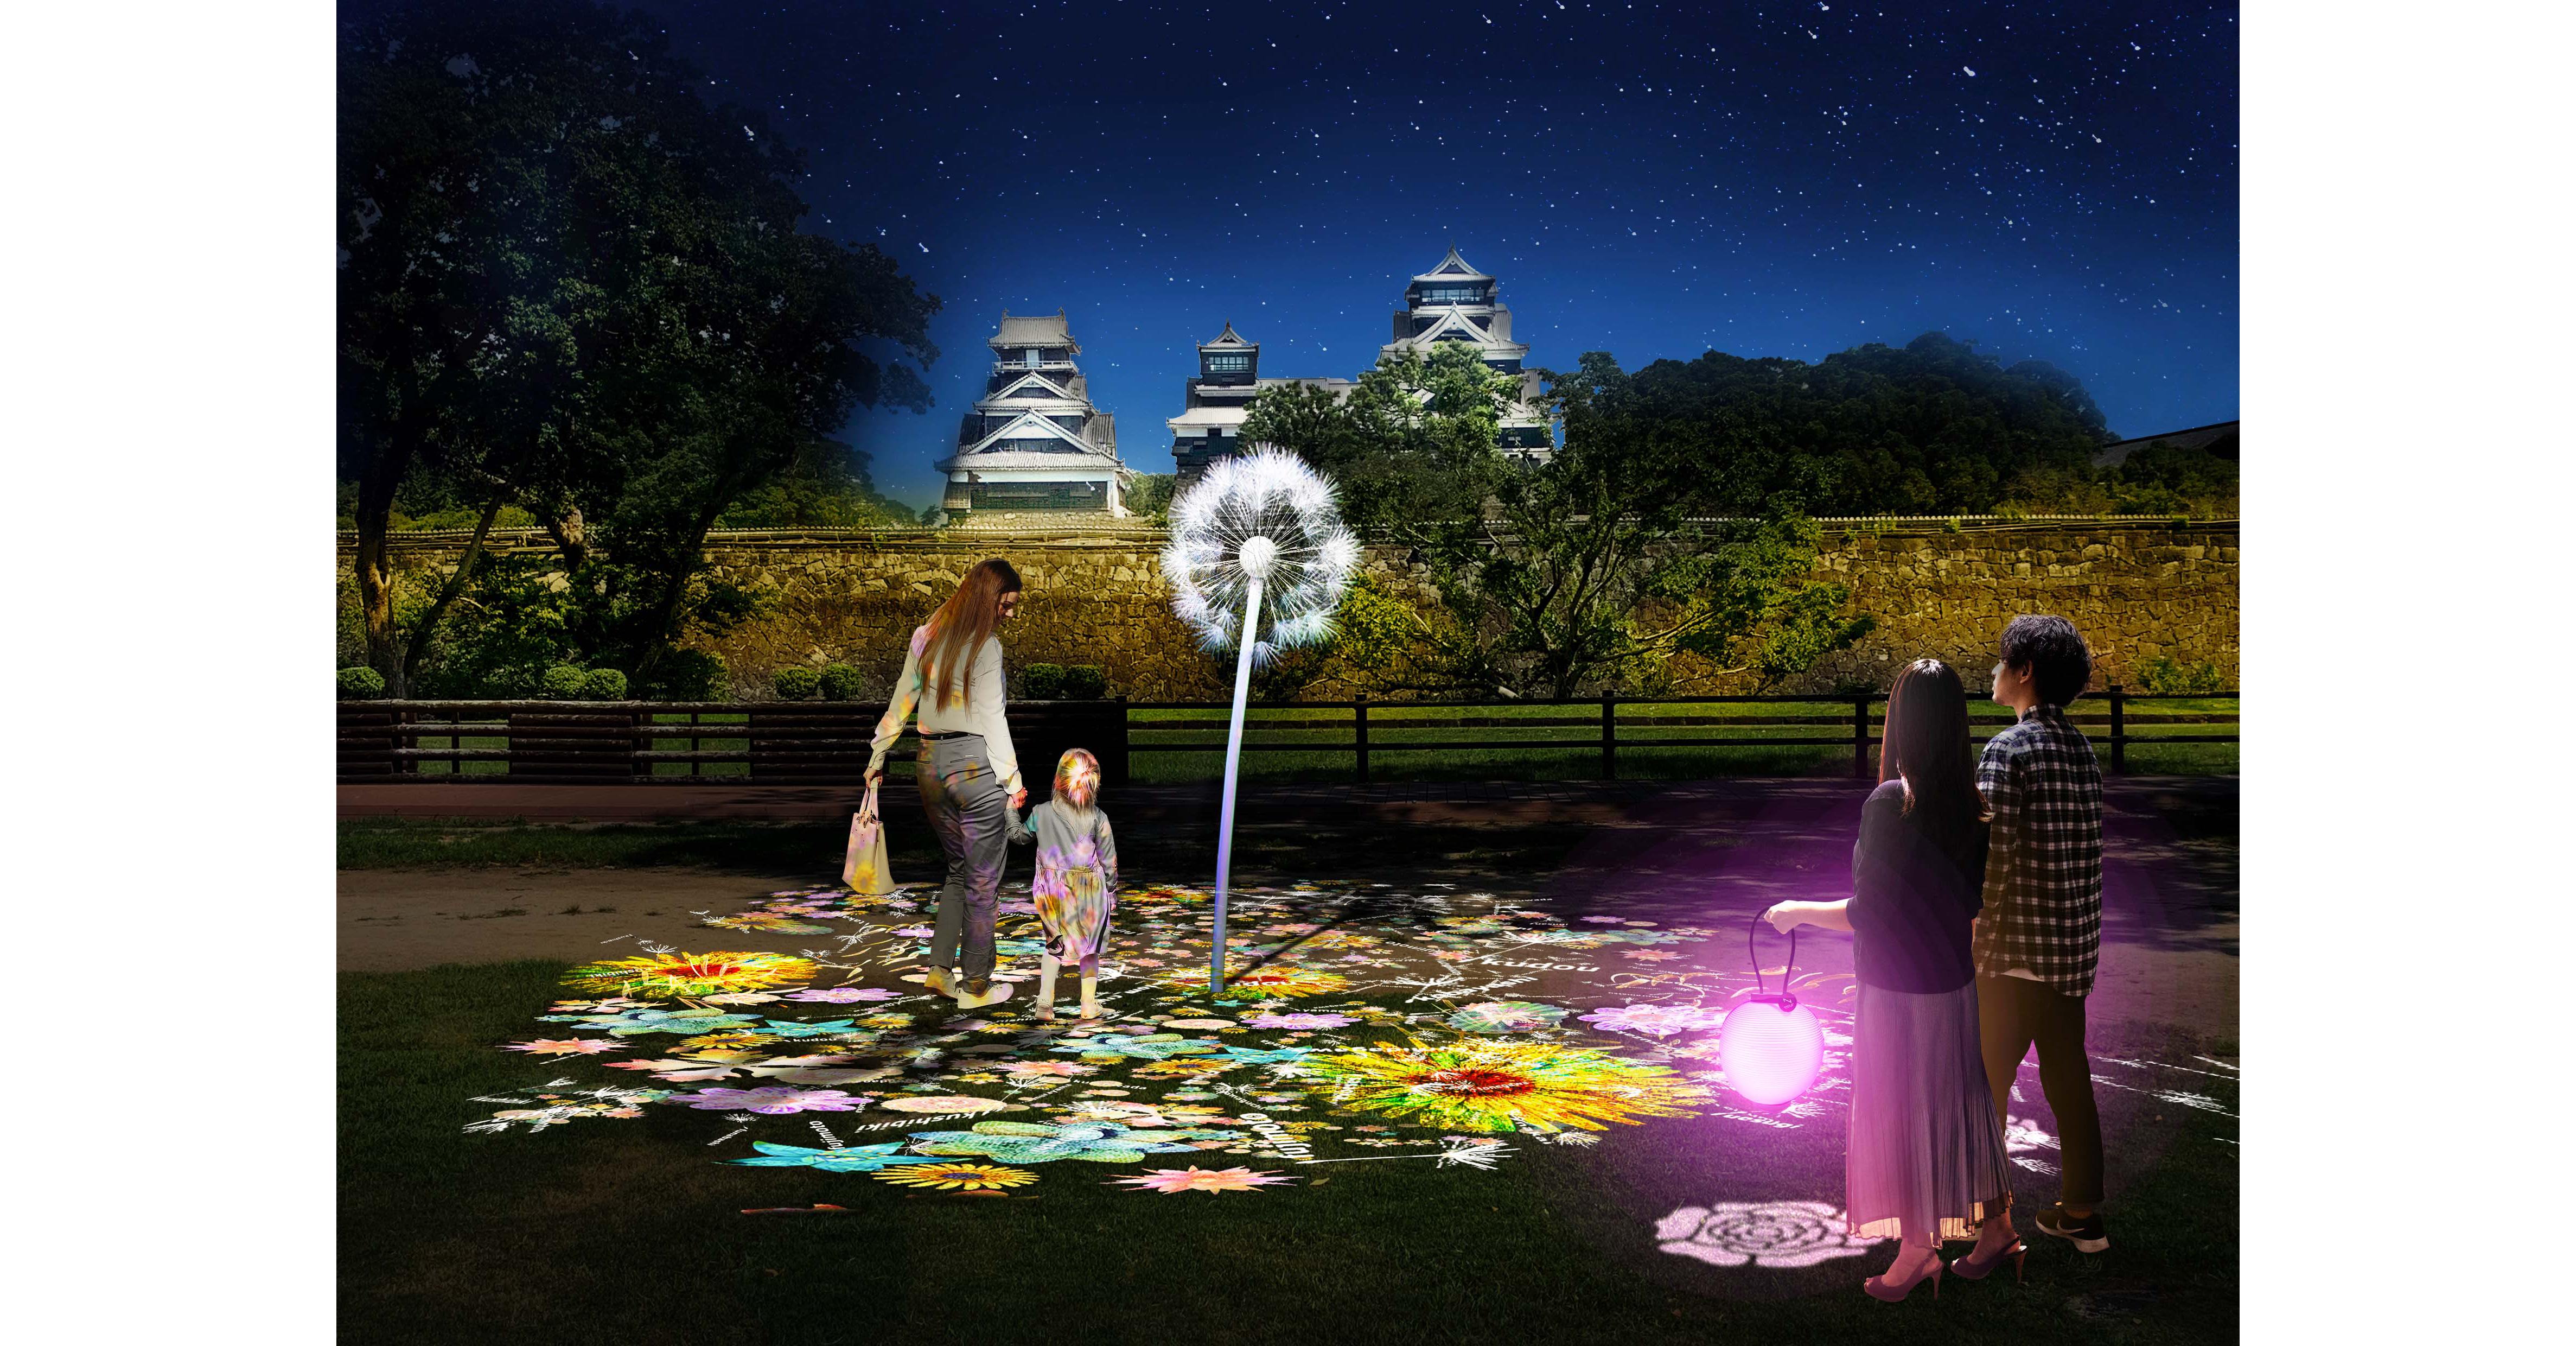 平和を祈るネイキッド『DANDELION』が復旧目指す熊本城で期間限定展示 